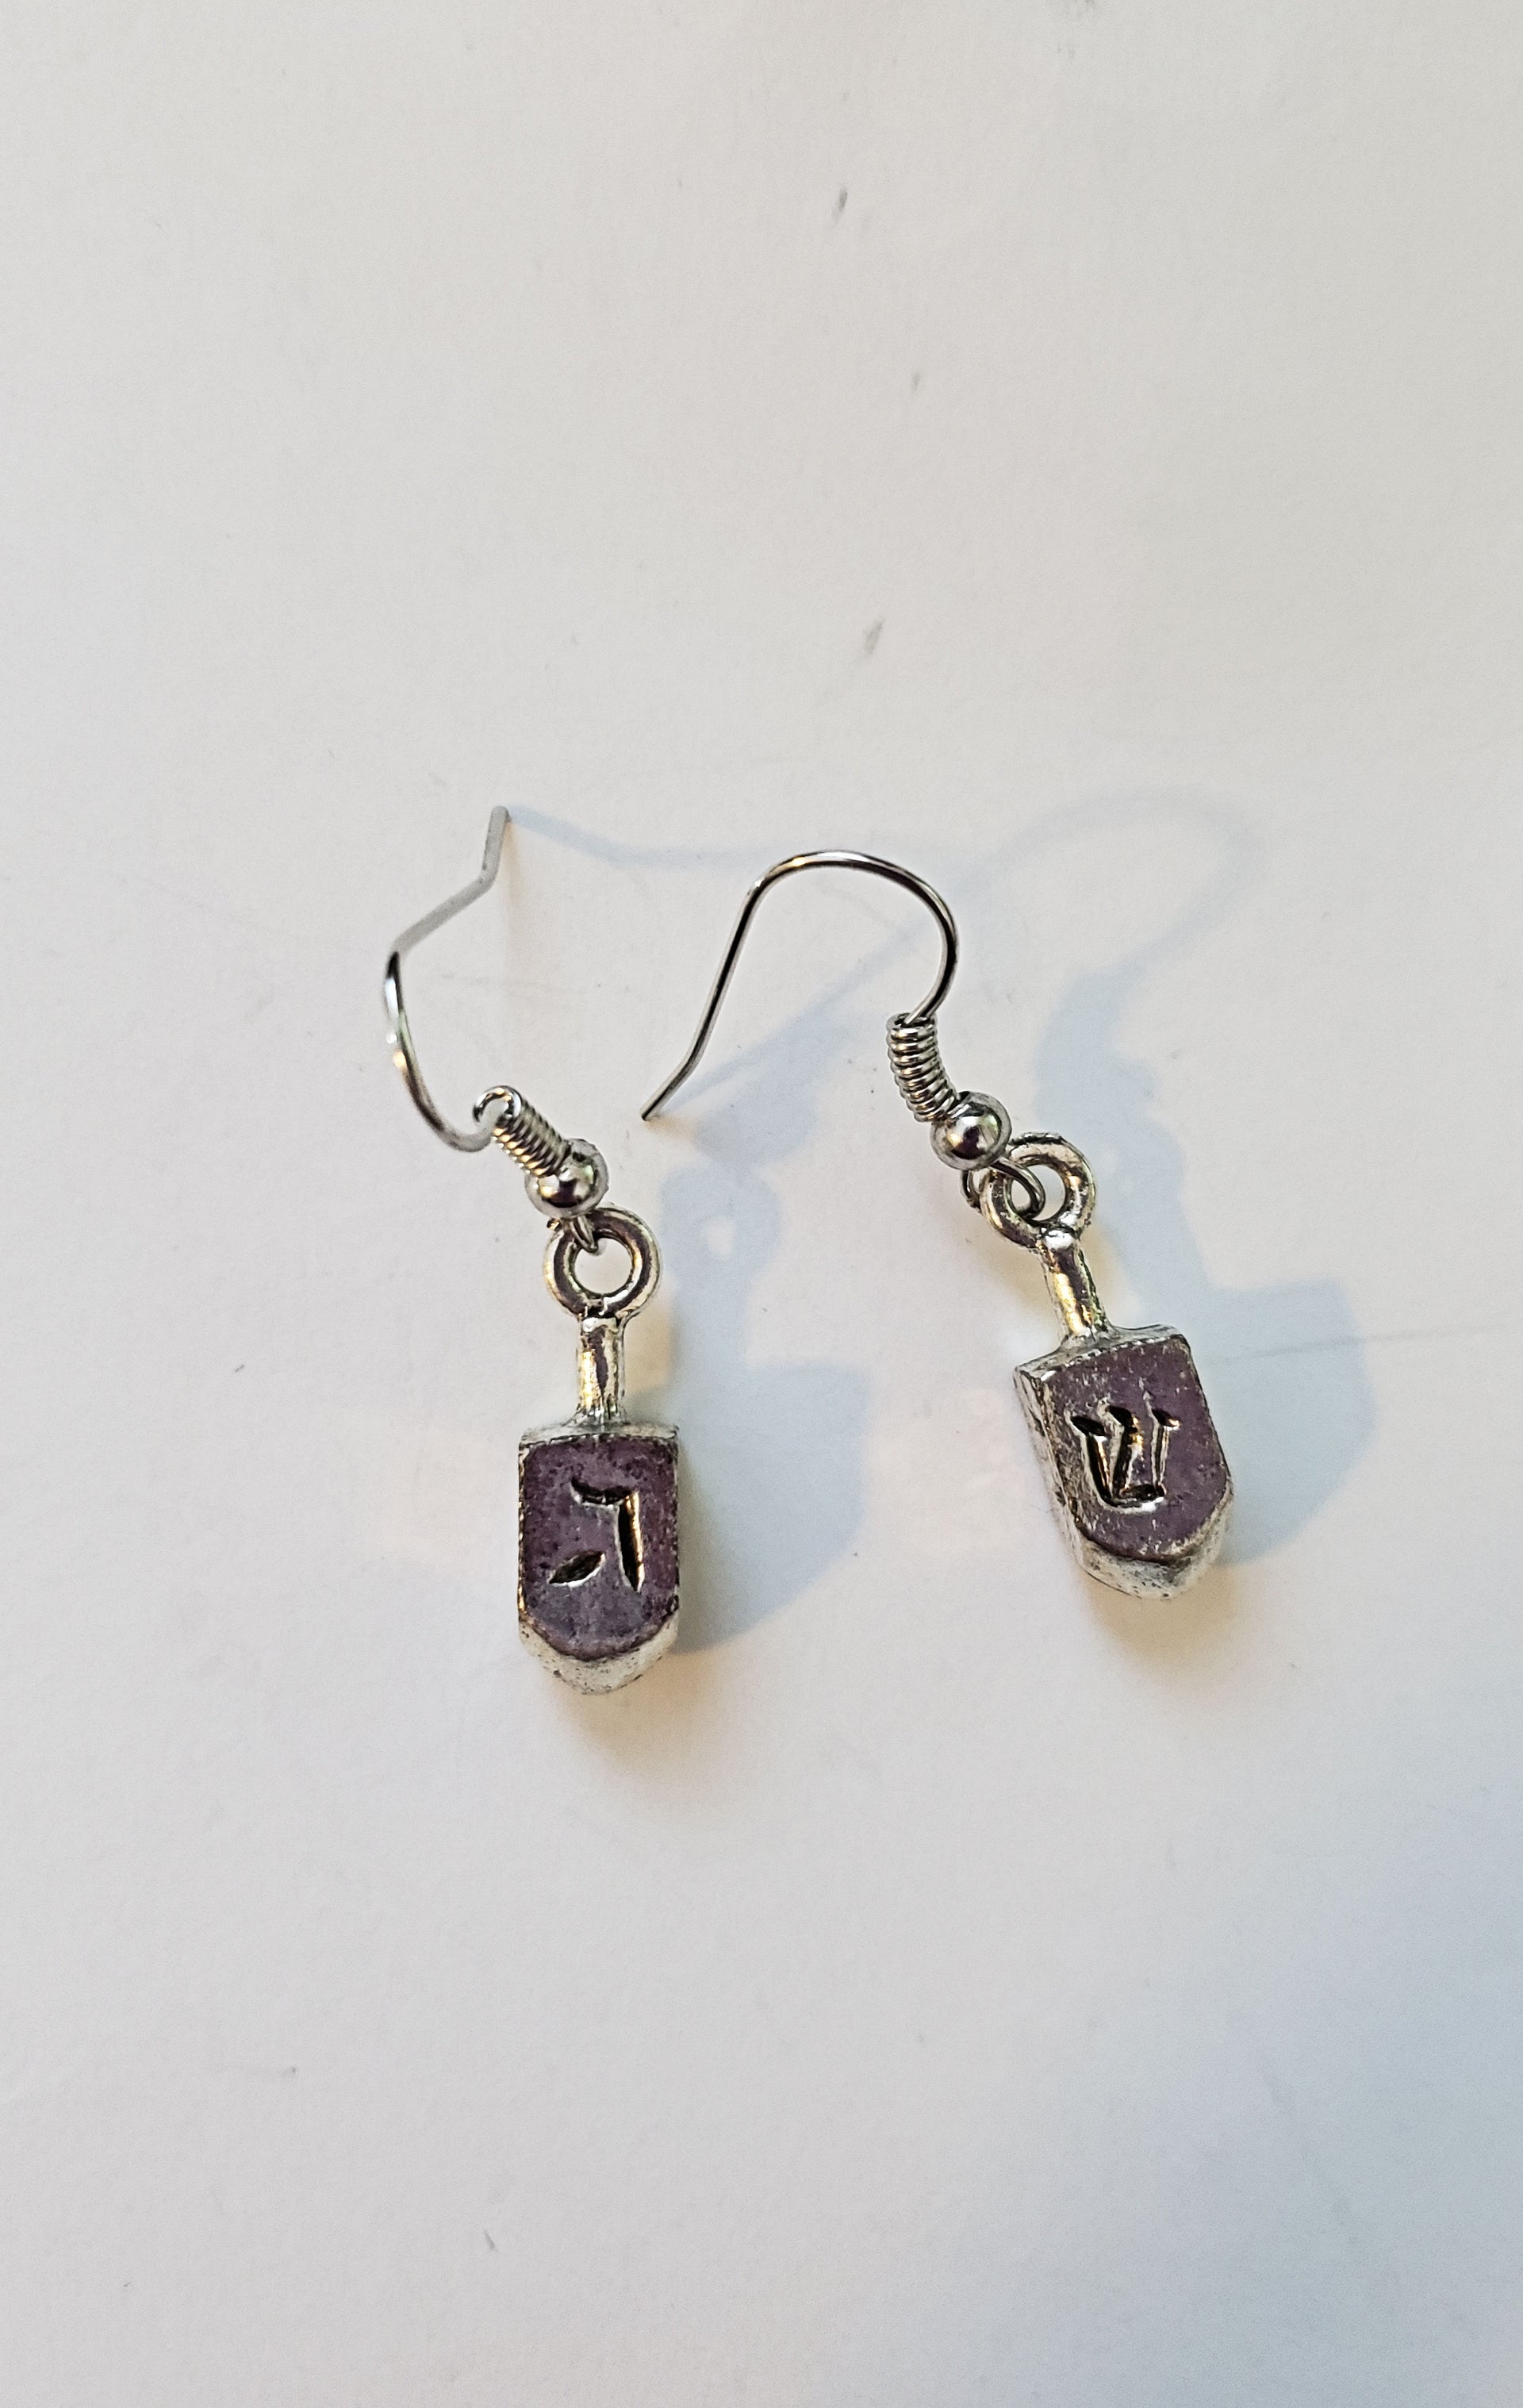 hanukkah or chanukah simple silver earrings menorahs and dreidels dreidels / hypoallergic wires